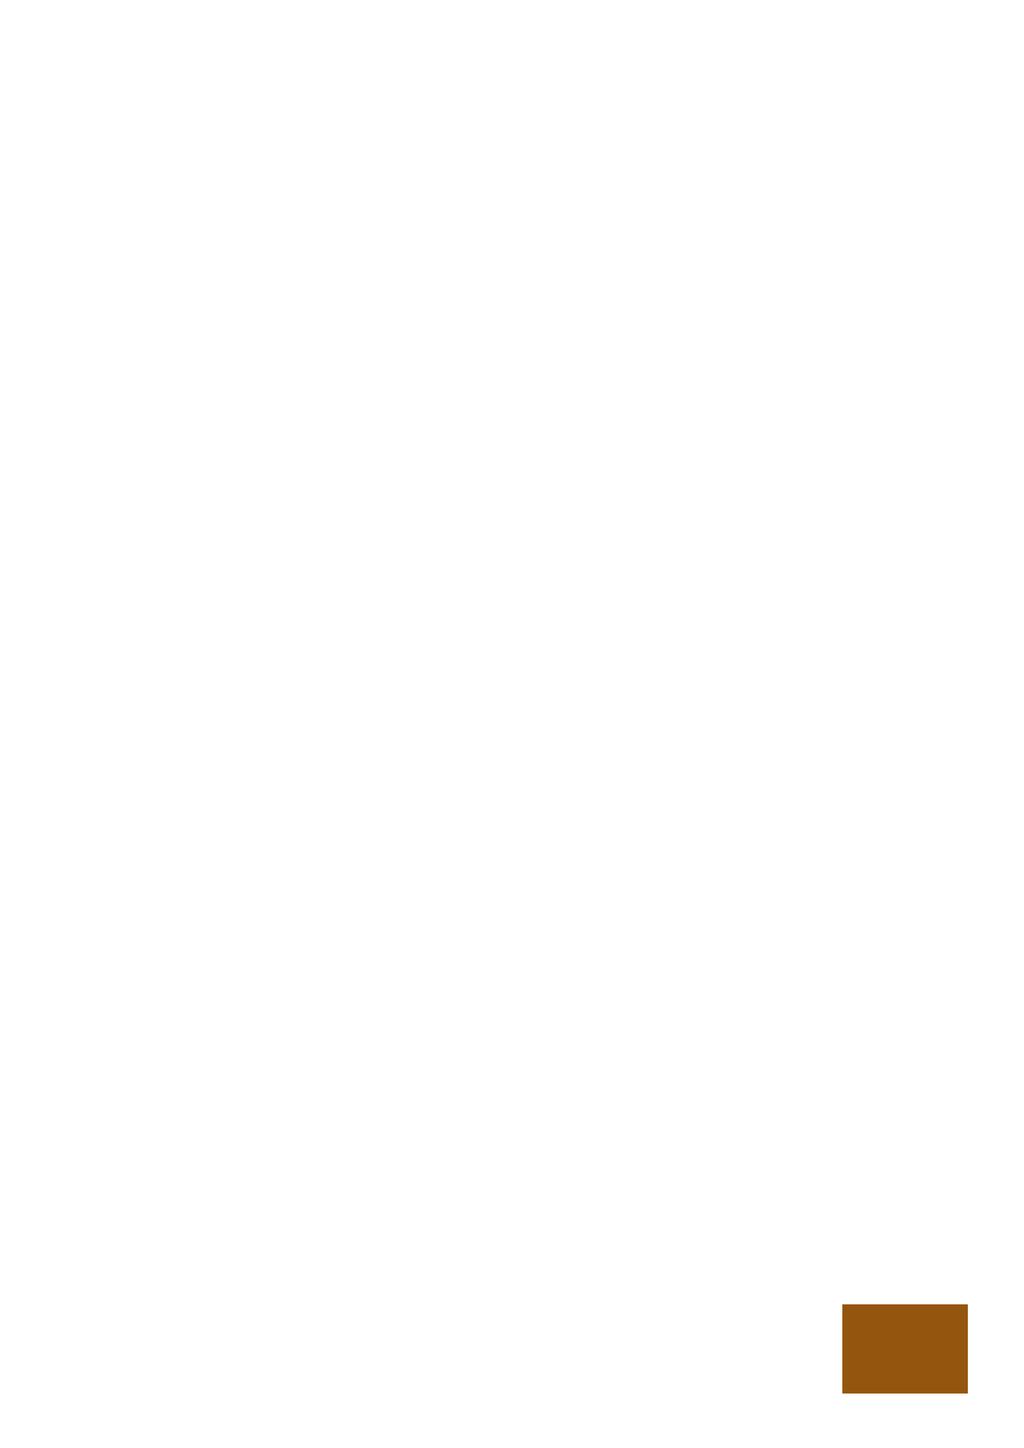 Avgifter för allmänna handlingar och Skatteverkets skydd för enskildas intressen Persson, Vilhelm Published in: Förvaltningsrättslig tidskrift 2017 Document Version: Förlagets slutgiltiga version